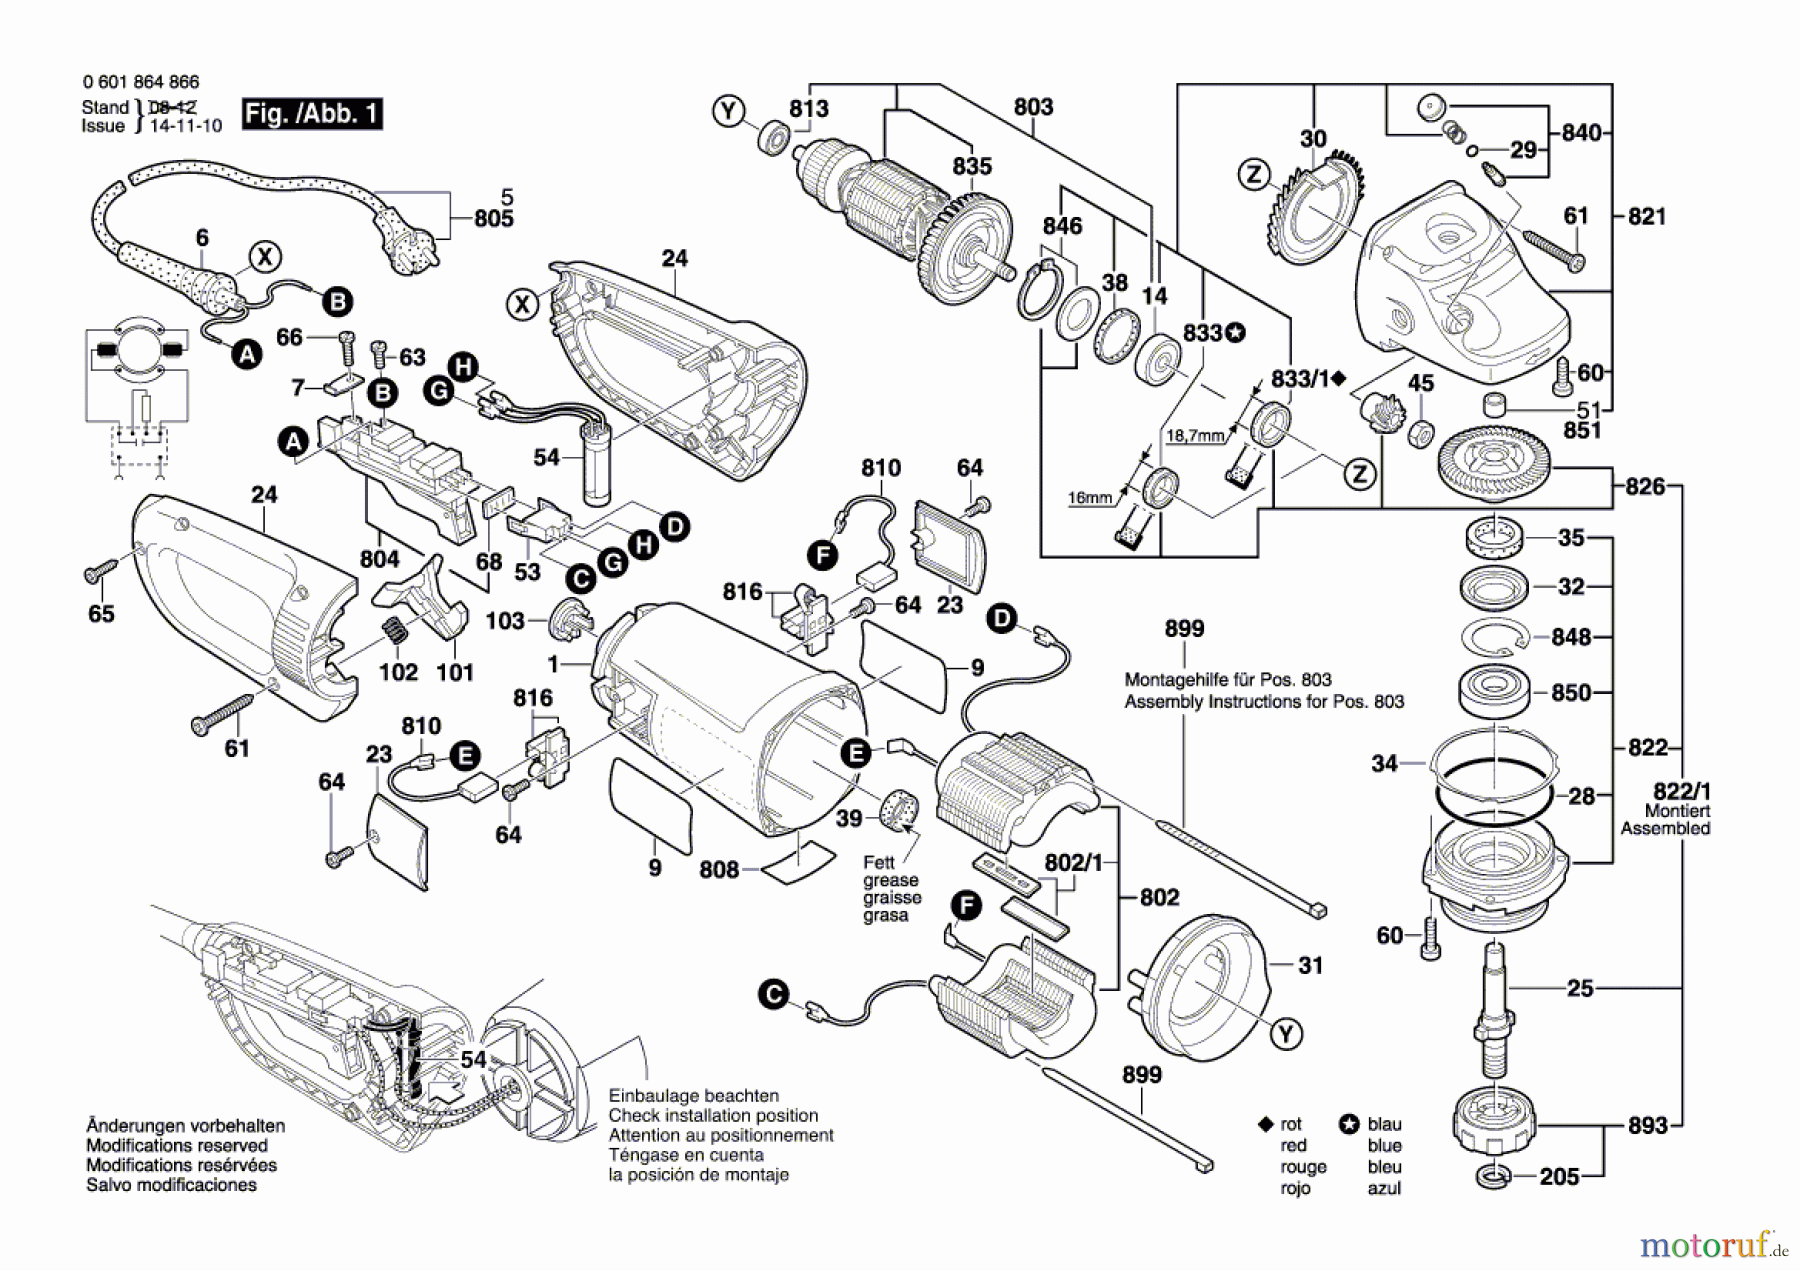  Bosch Werkzeug Winkelschleifer BTI-WKS 230 SE Seite 1